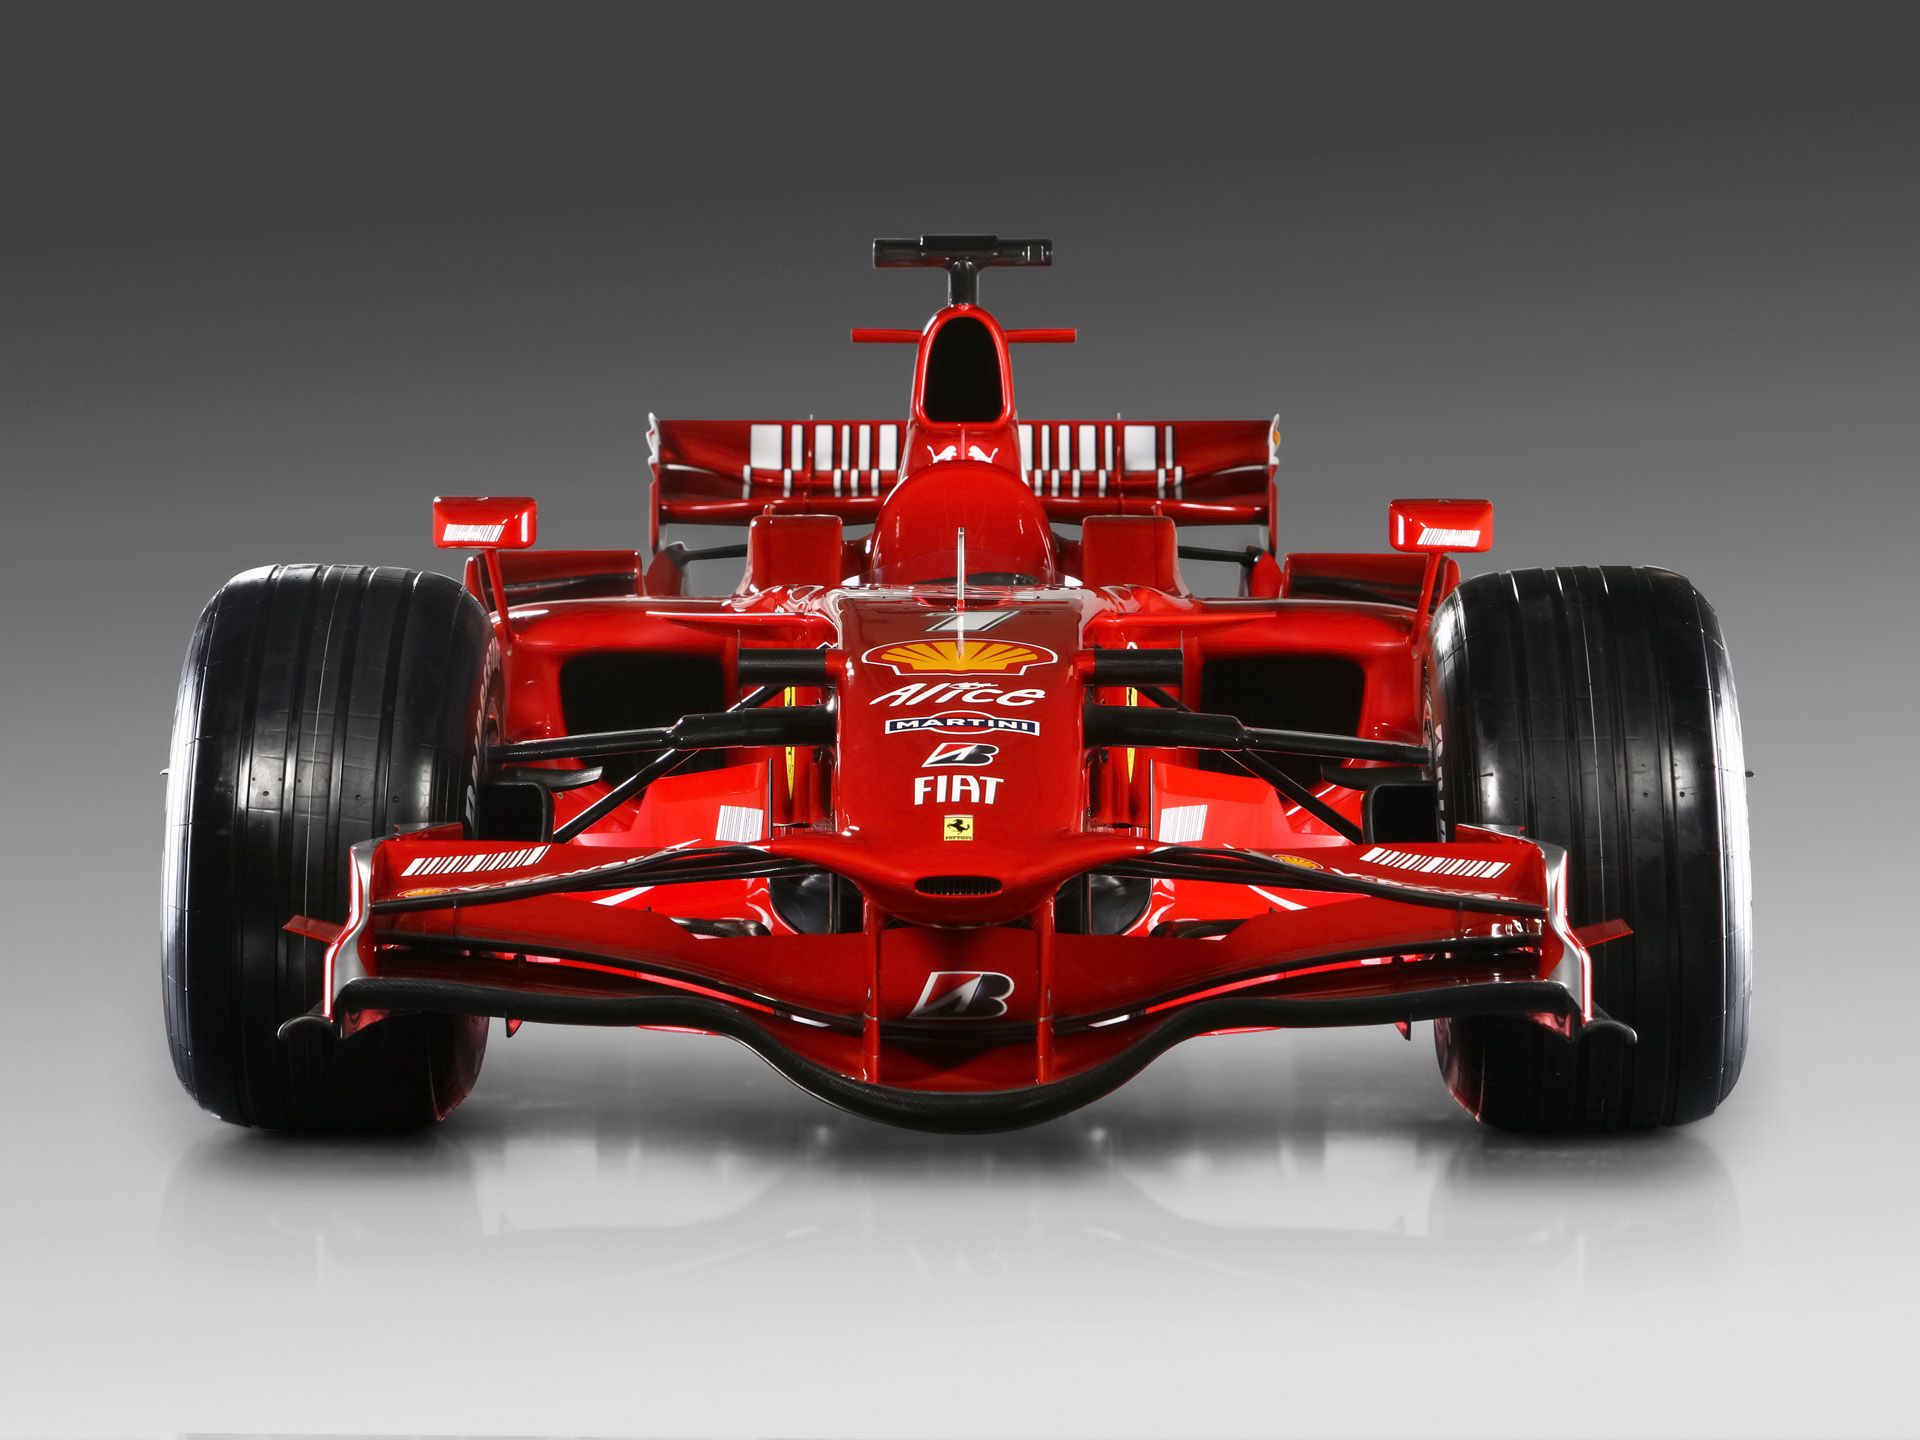 Ferrari Formula 1 F1 wallpaper by QFranH  Download on ZEDGE  83d7